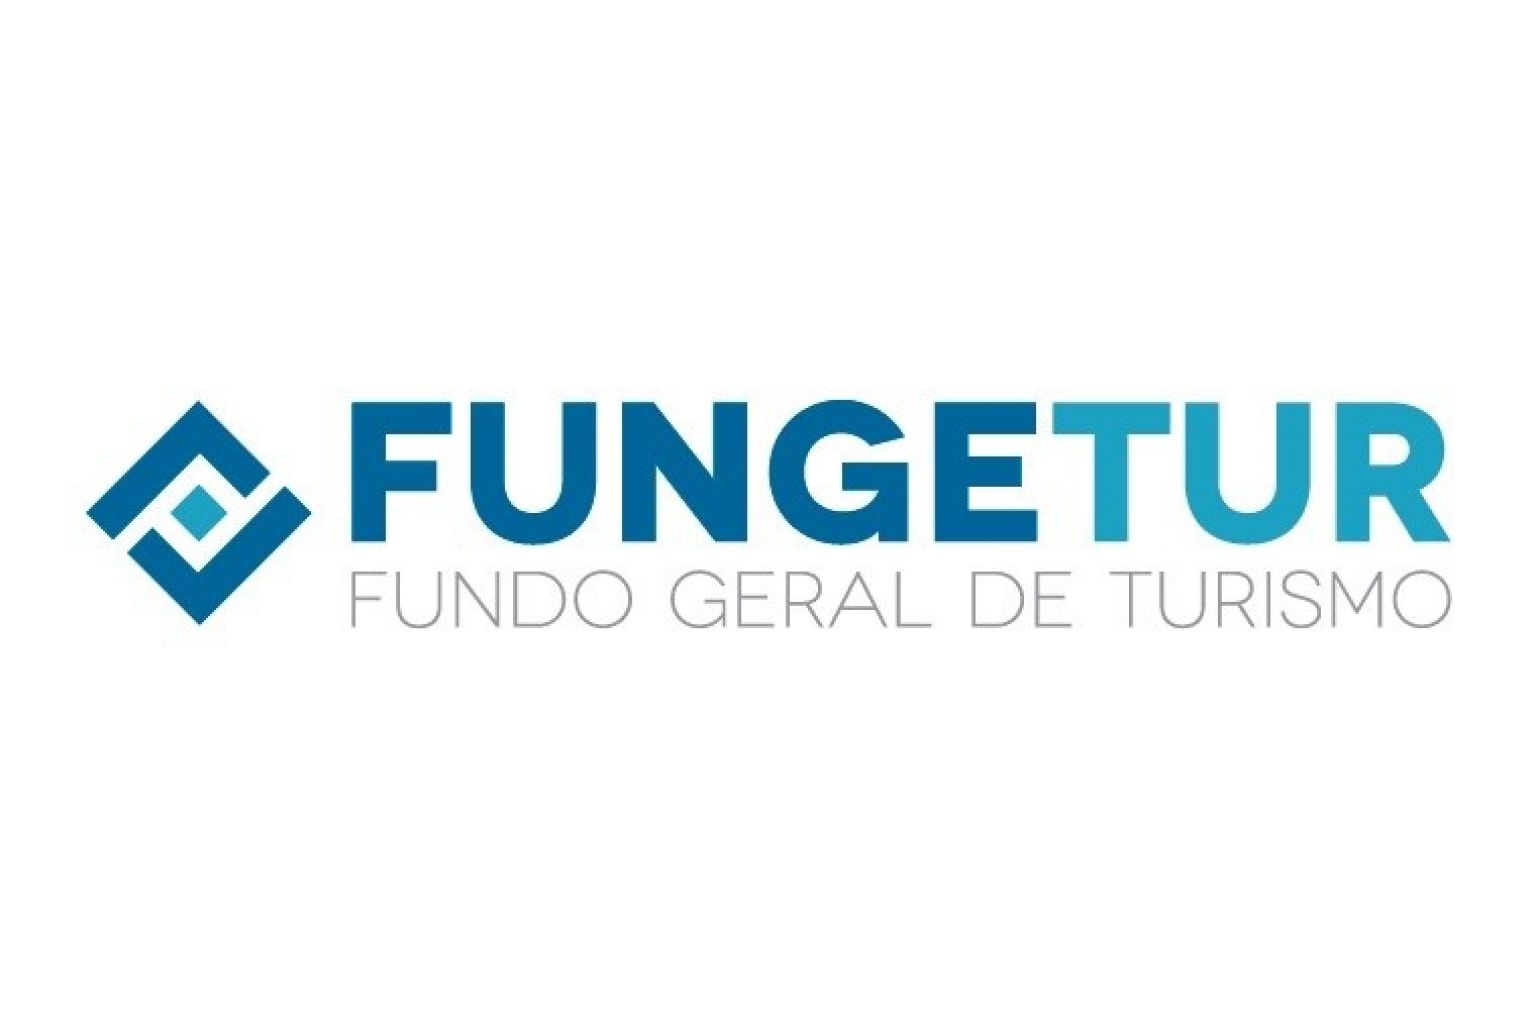 MTur alerta para falso serviço de intermediação no acesso aos recursos do Fungetur